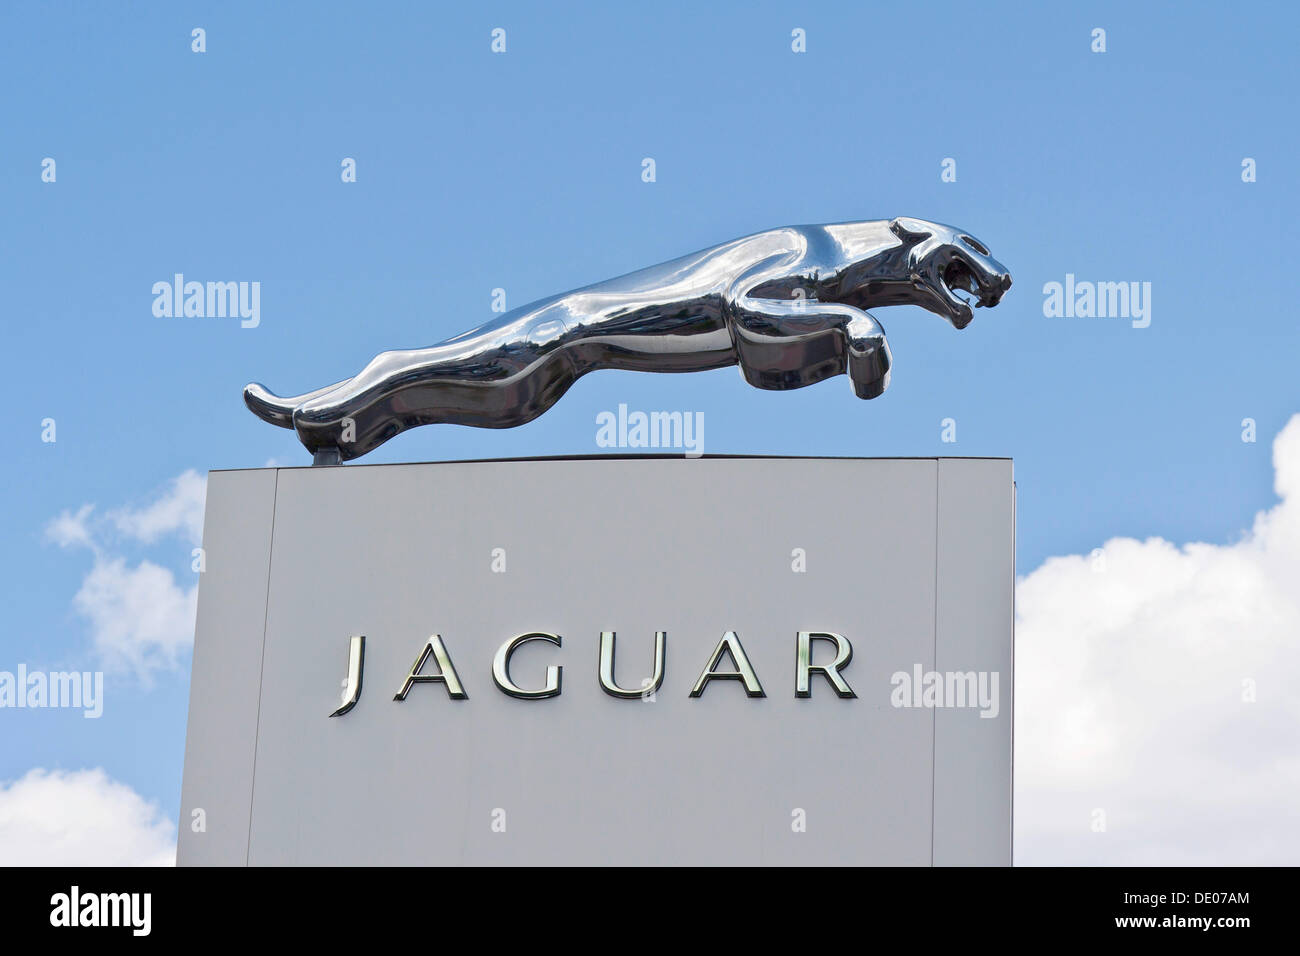 Jaguar Cars Ltd., ein britischer Hersteller von Luxus- und Sportwagen, Logo, Schriftzug Stockfoto